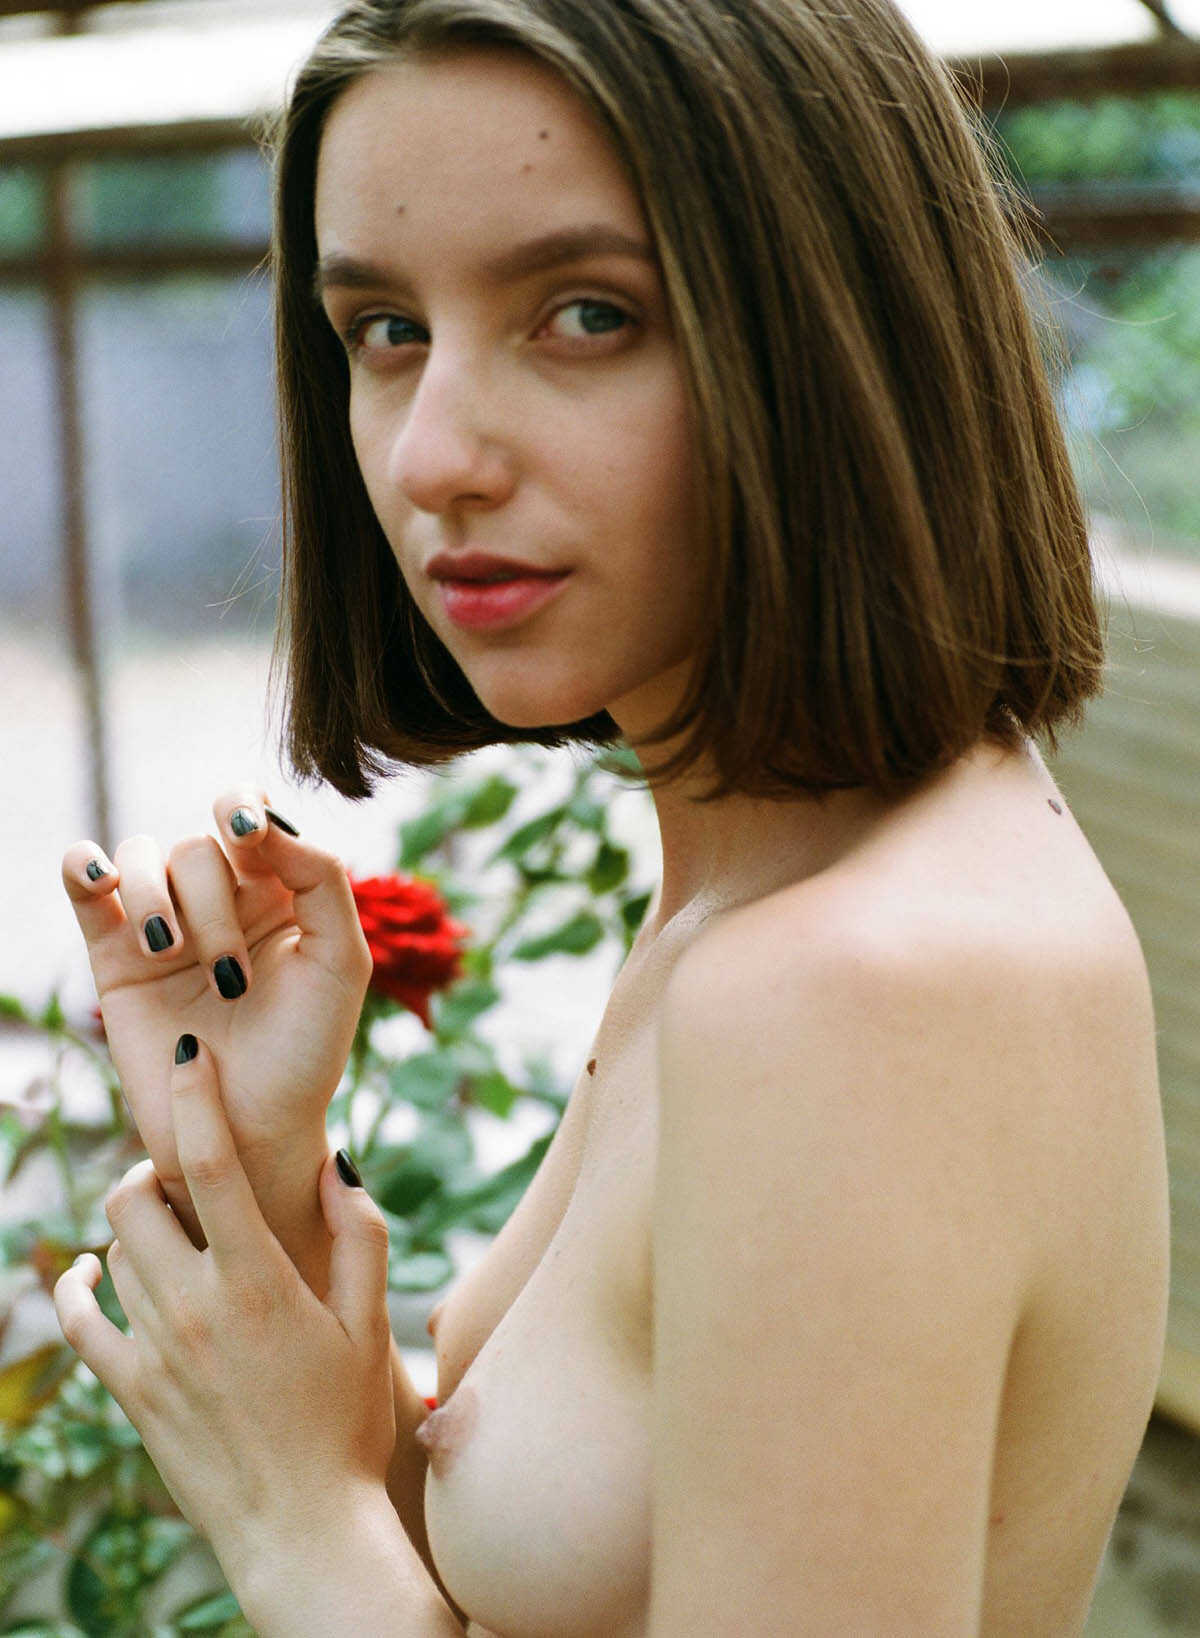 Η νεαρή μουνάρα μοντέλο Anastasia G σε γυμνές φωτογραφίες